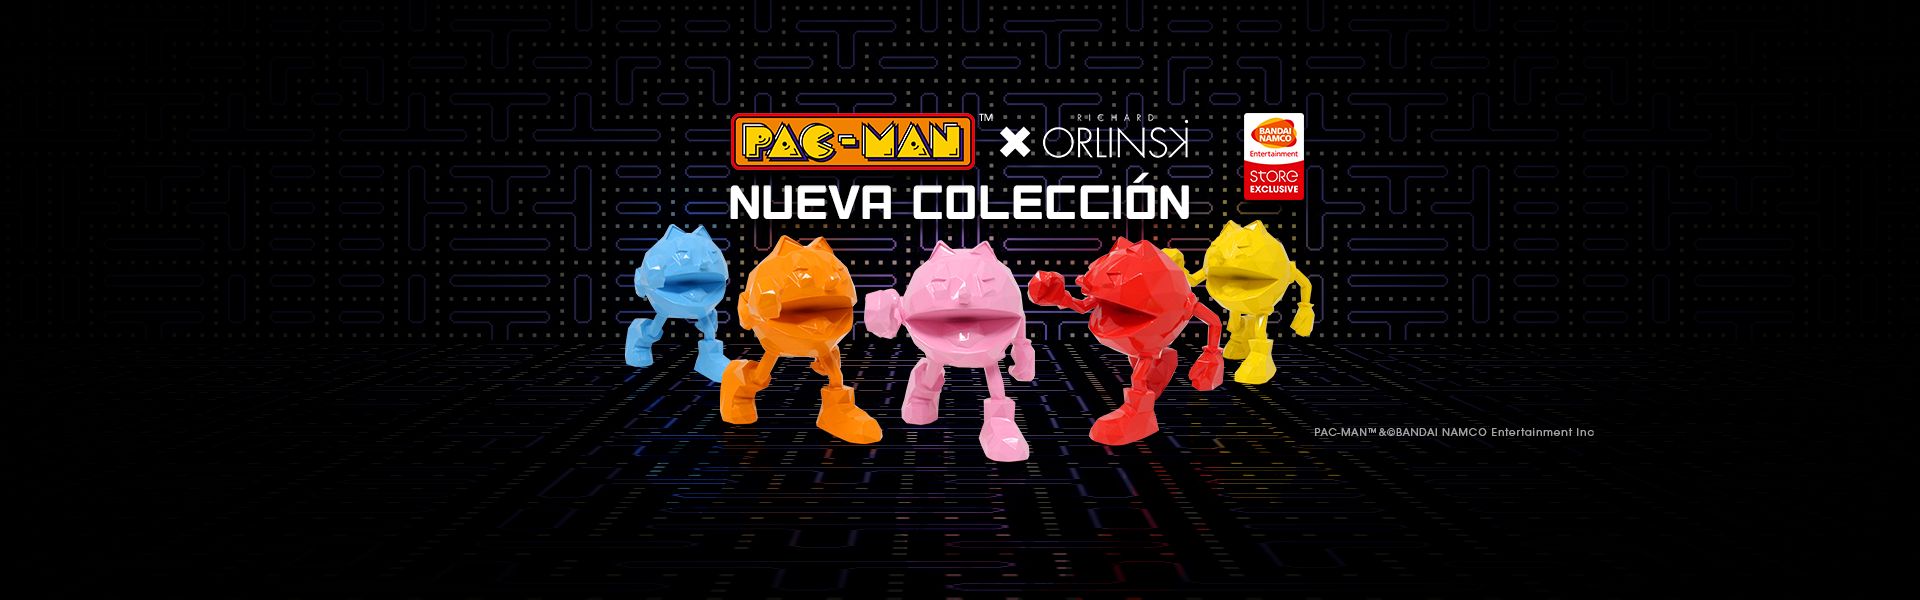 PAC-MAN x ORLINSKI : Nueva Colección